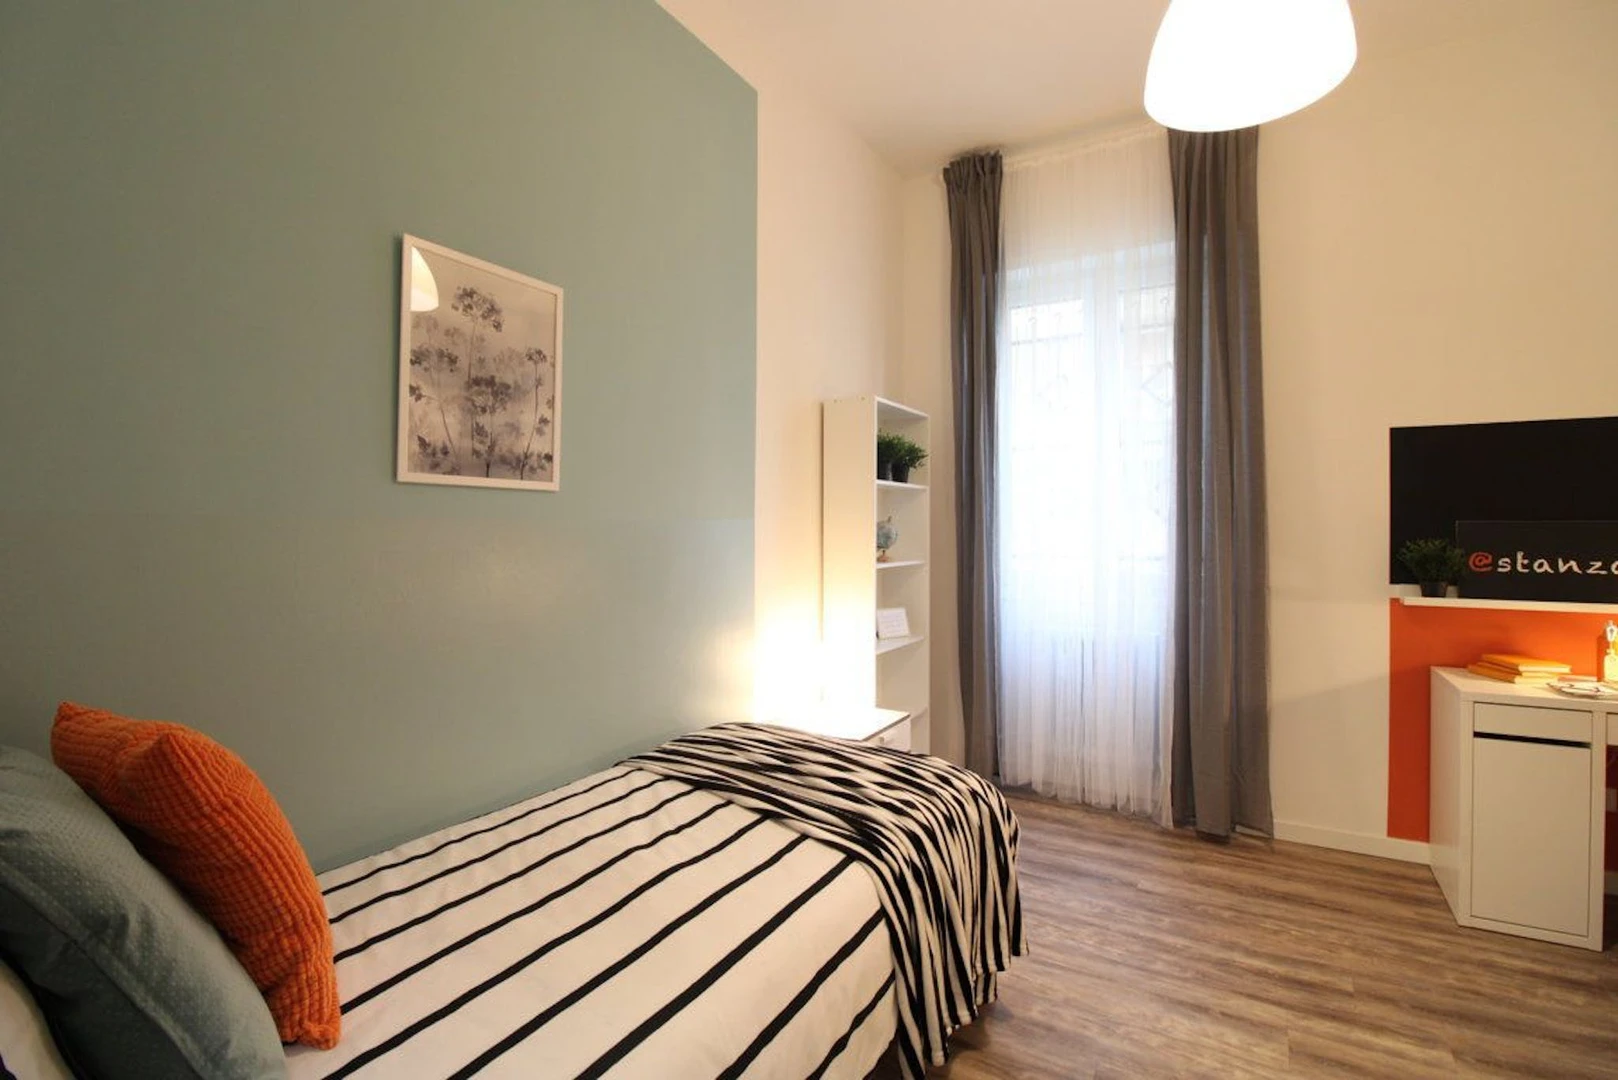 Modena de çift kişilik yataklı kiralık oda